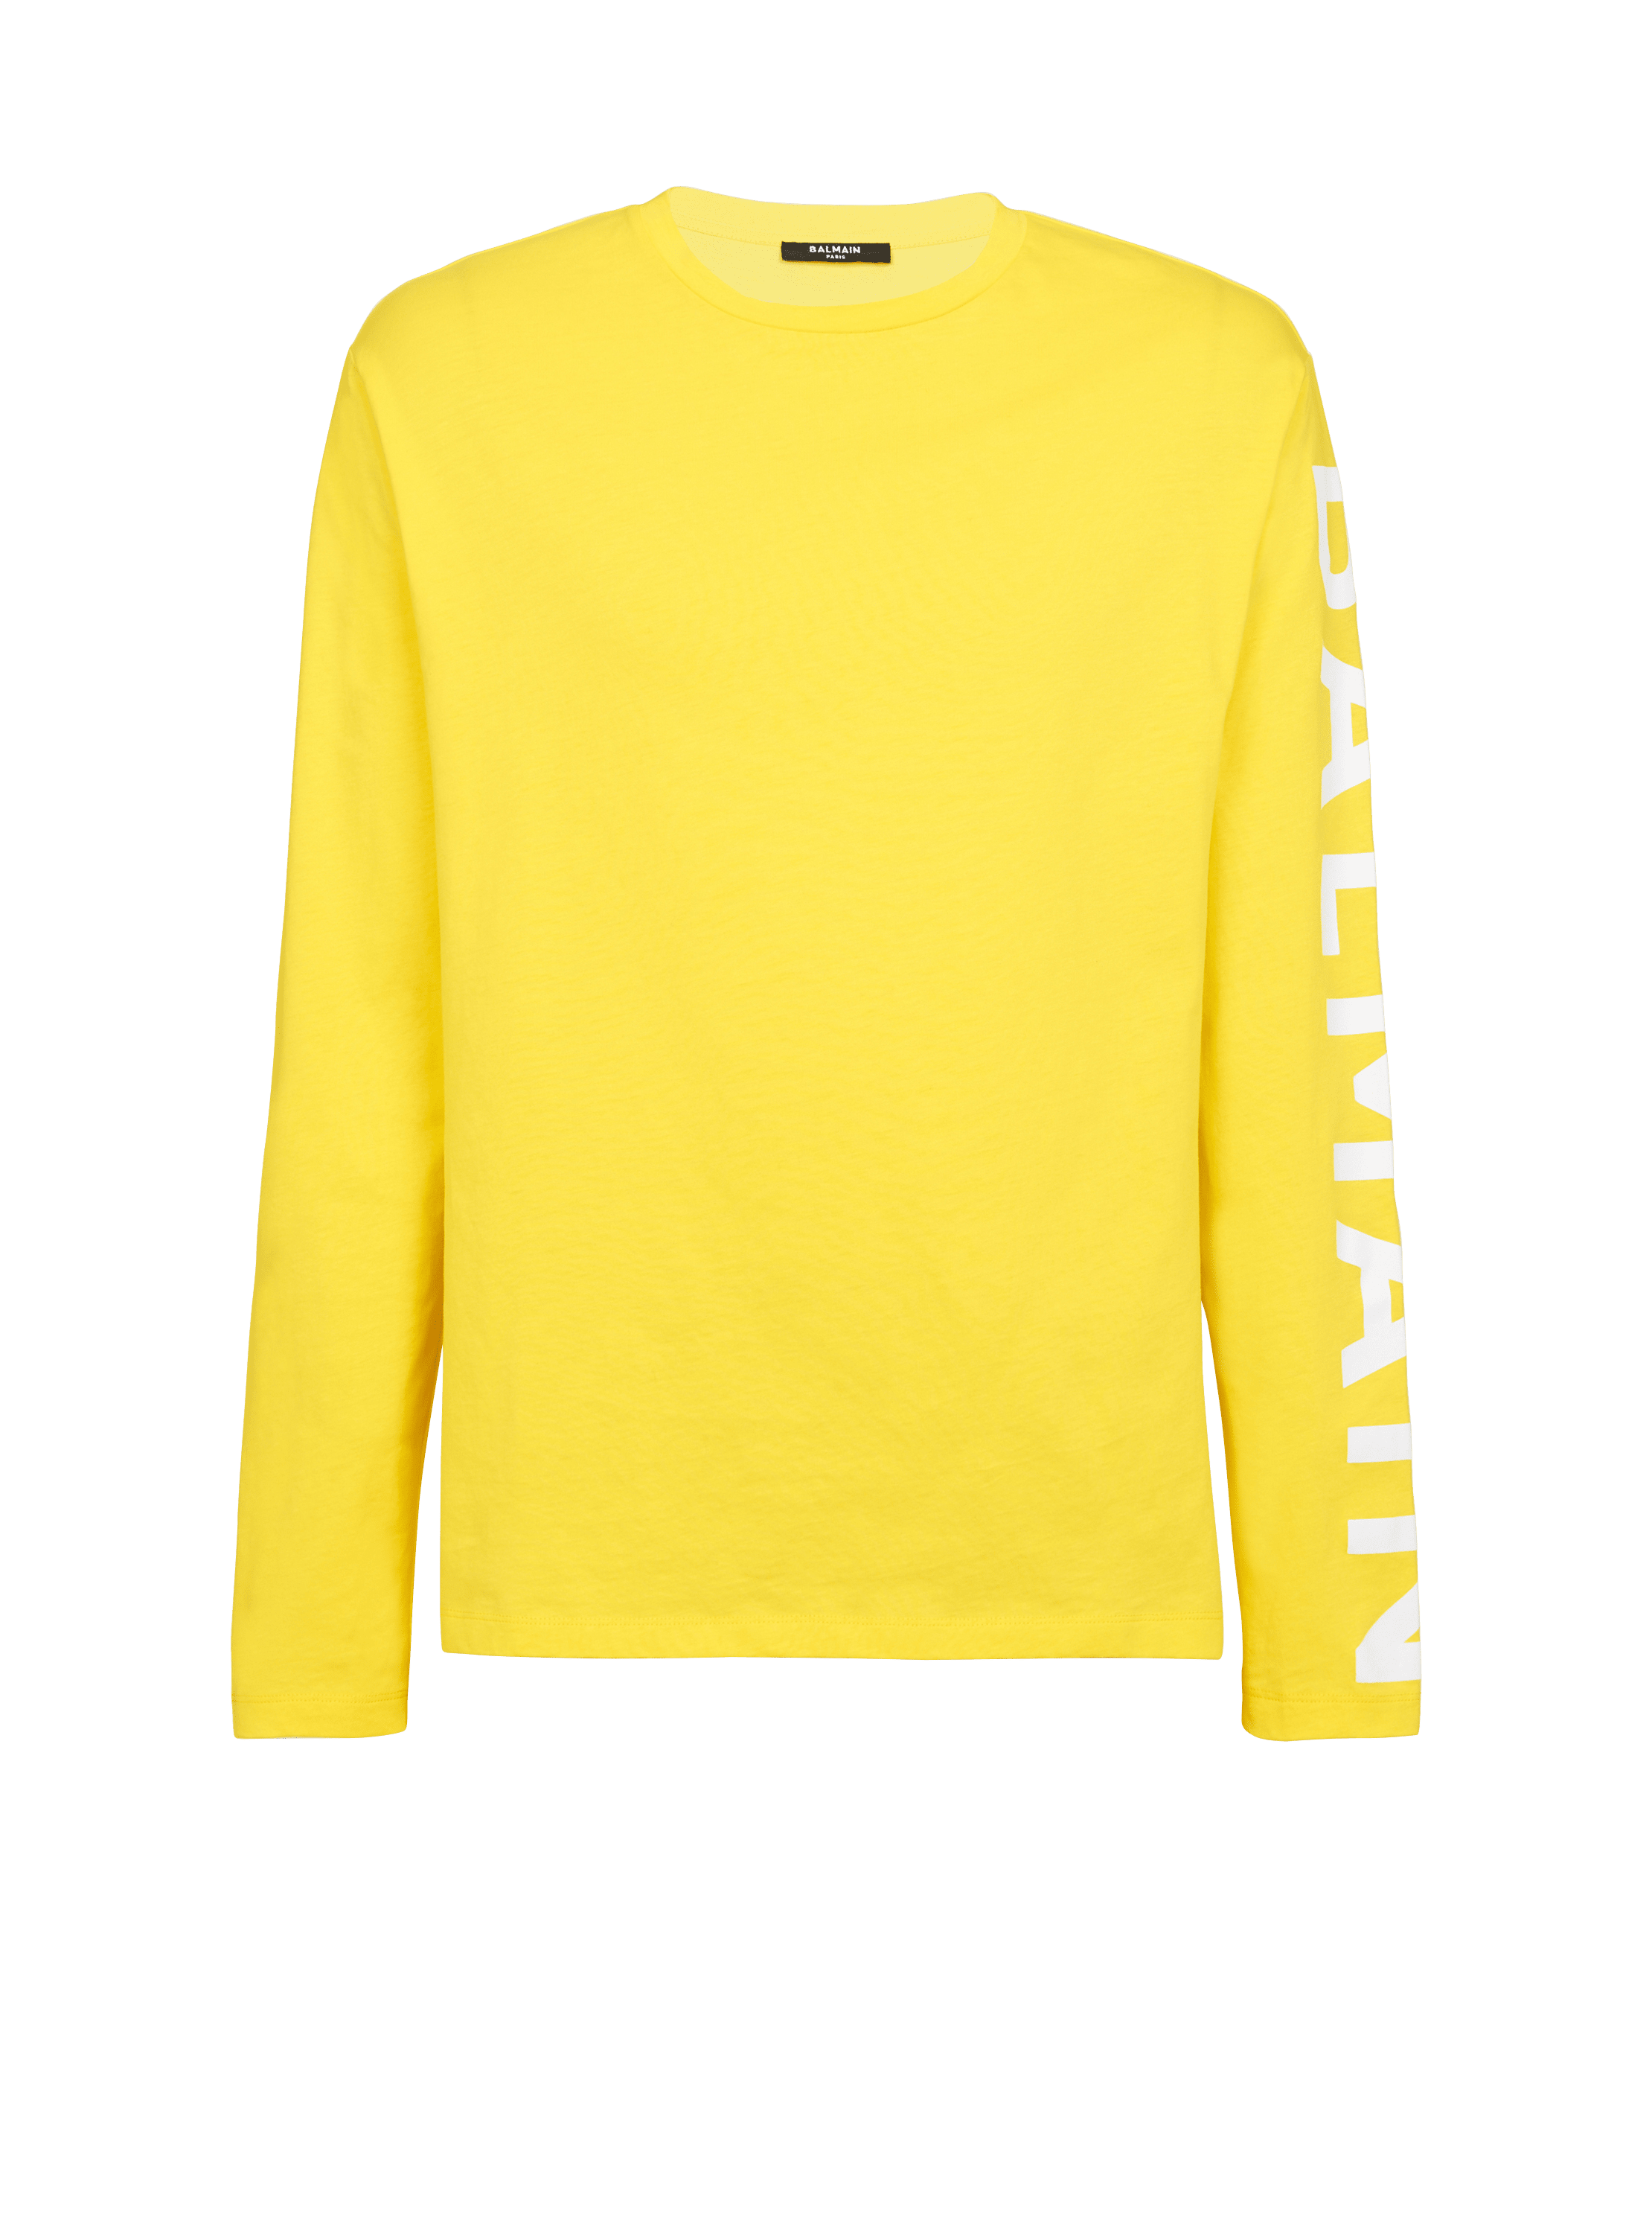 T-shirt in cotone con logo Balmain, giallo, hi-res